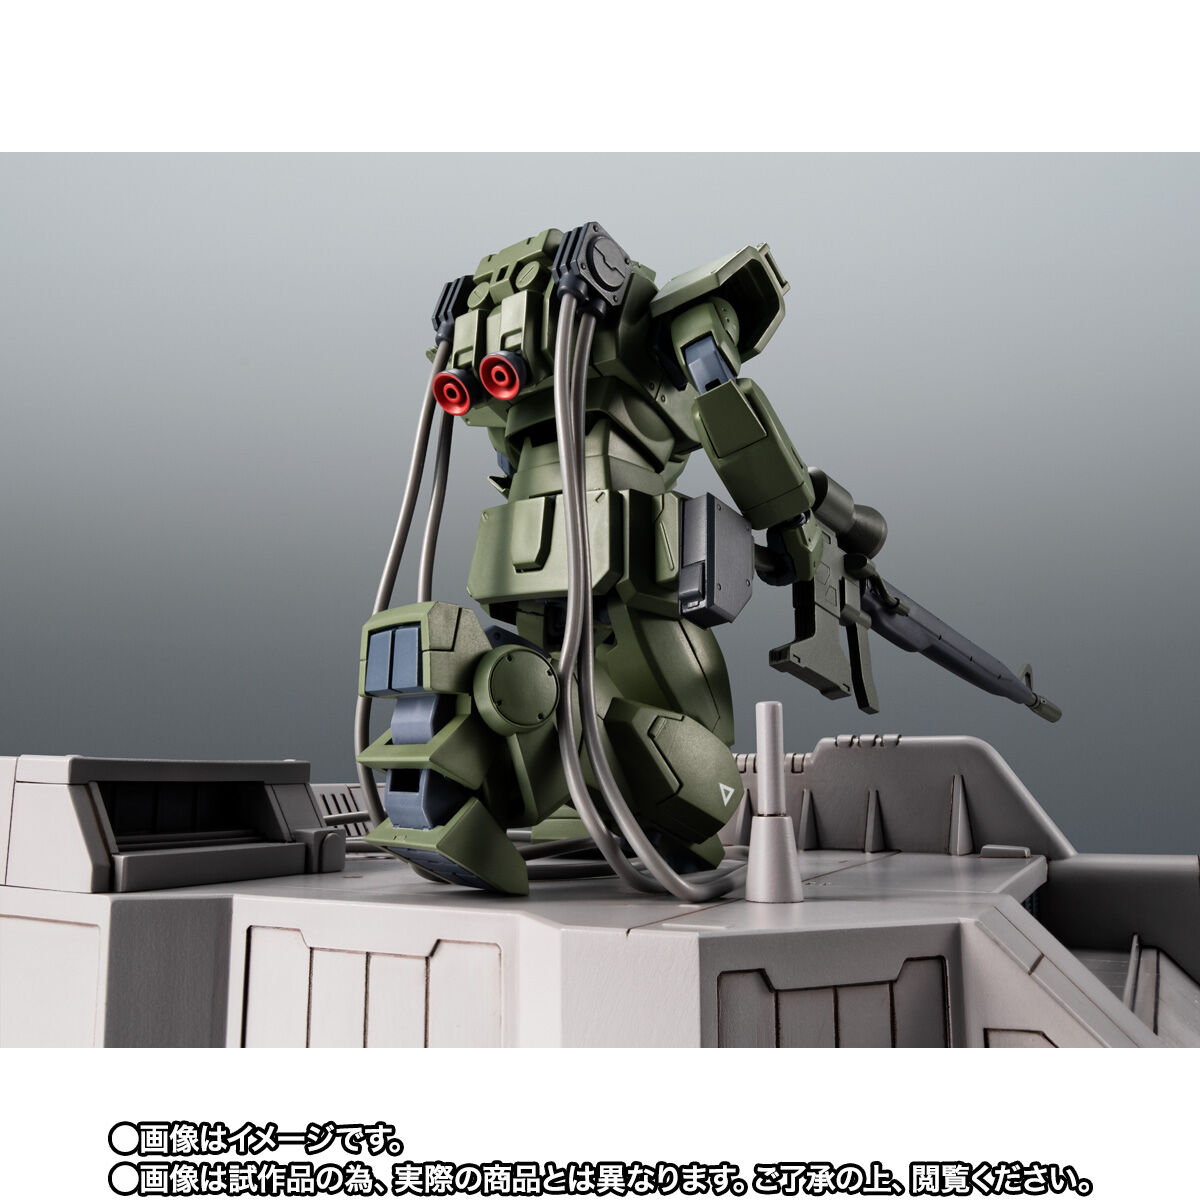 【限定販売】ROBOT魂〈SIDE MS〉『RGM-79（G）ジム・スナイパー ver. A.N.I.M.E.』機動戦士ガンダム 第08MS小隊 可動フィギュア-009